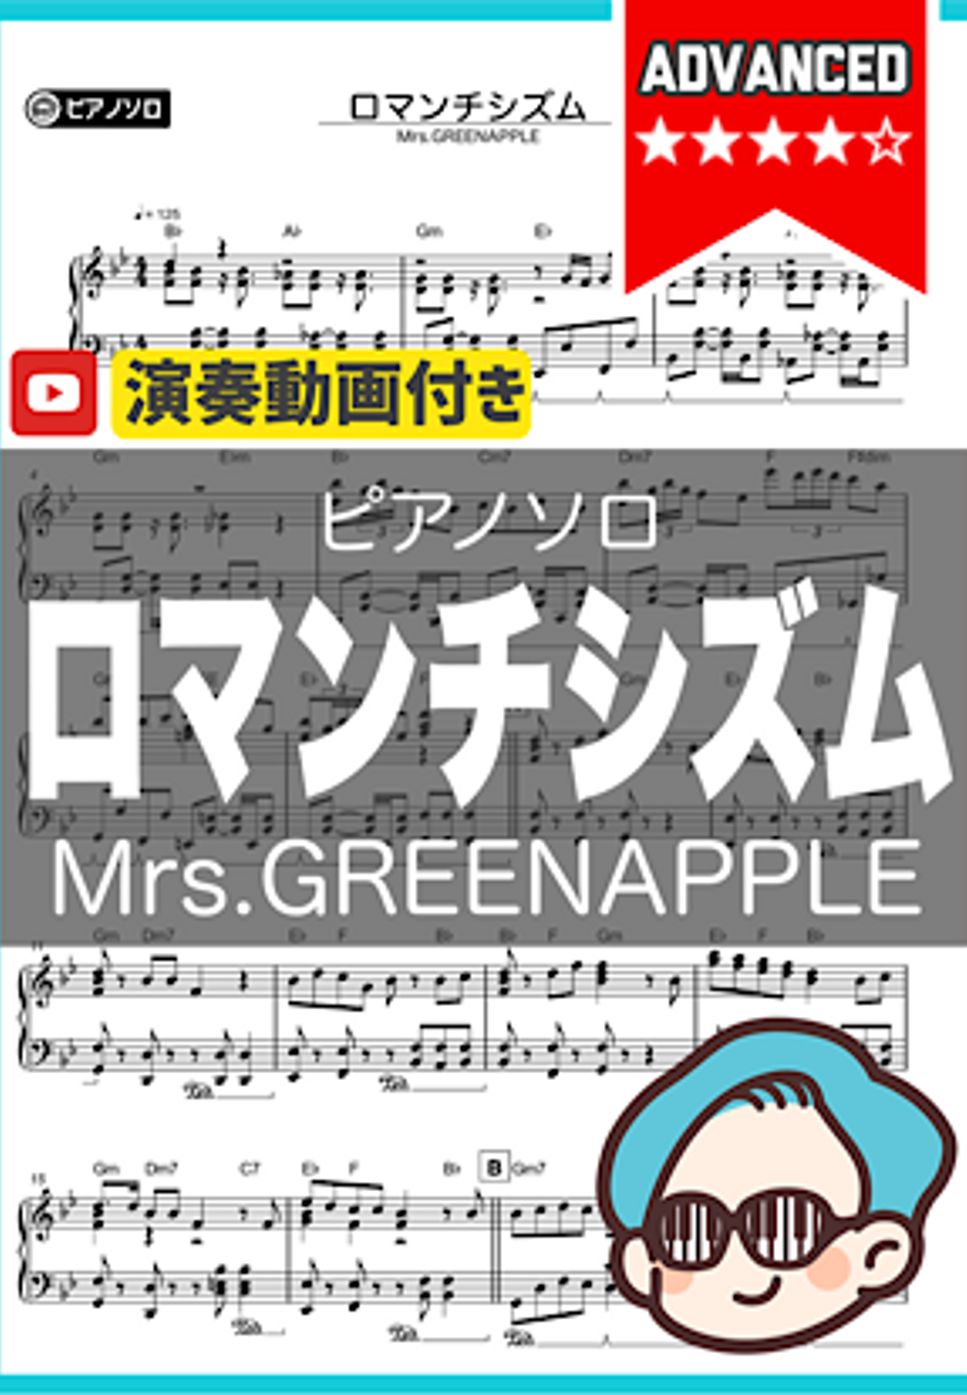 Mrs.GREENAPPLE - ロマンチシズム by シータピアノ